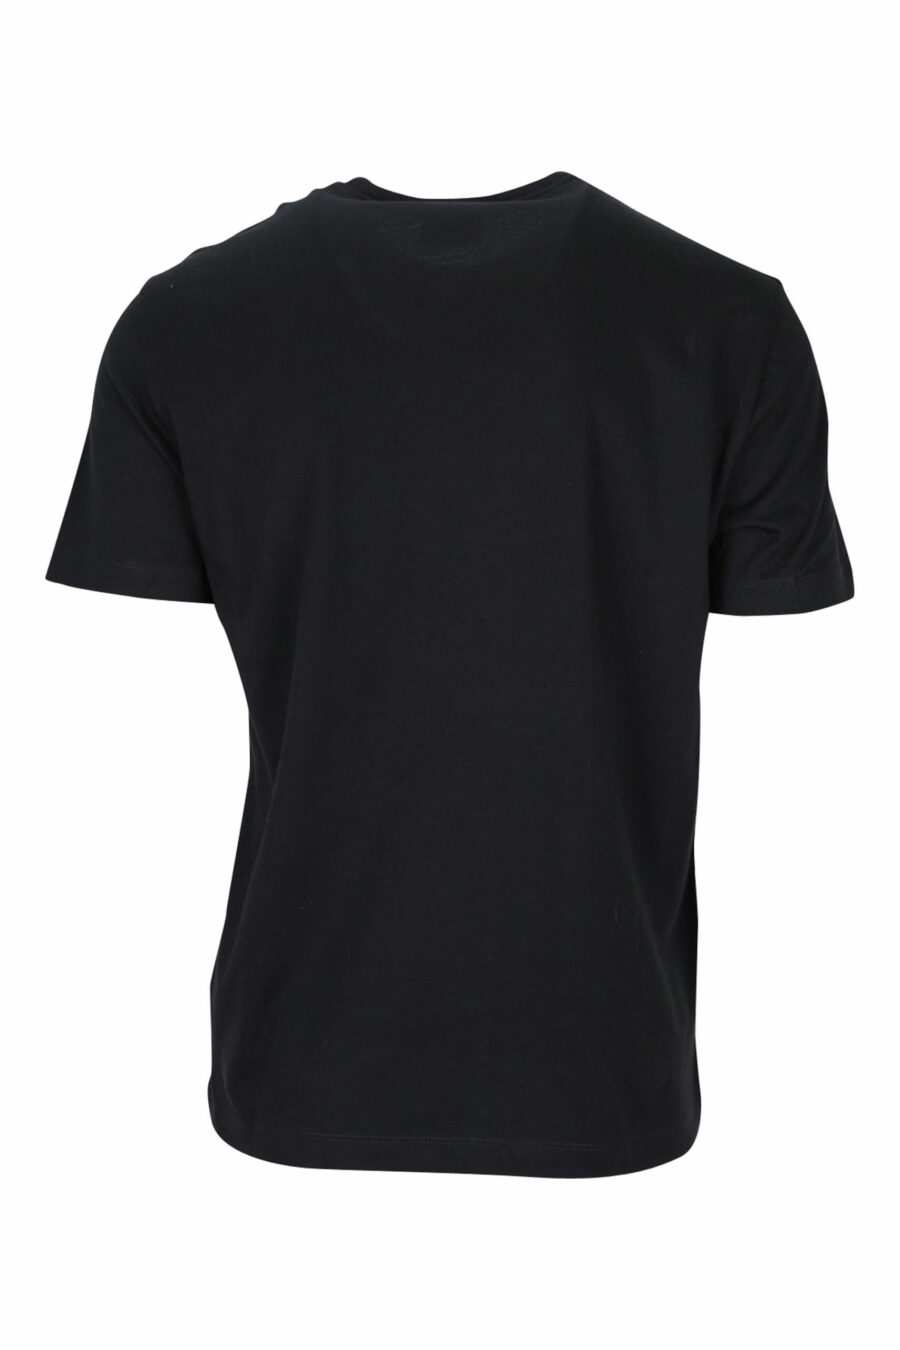 T-shirt black with white "lux identity" maxilogo - 8057767688400 1 scaled